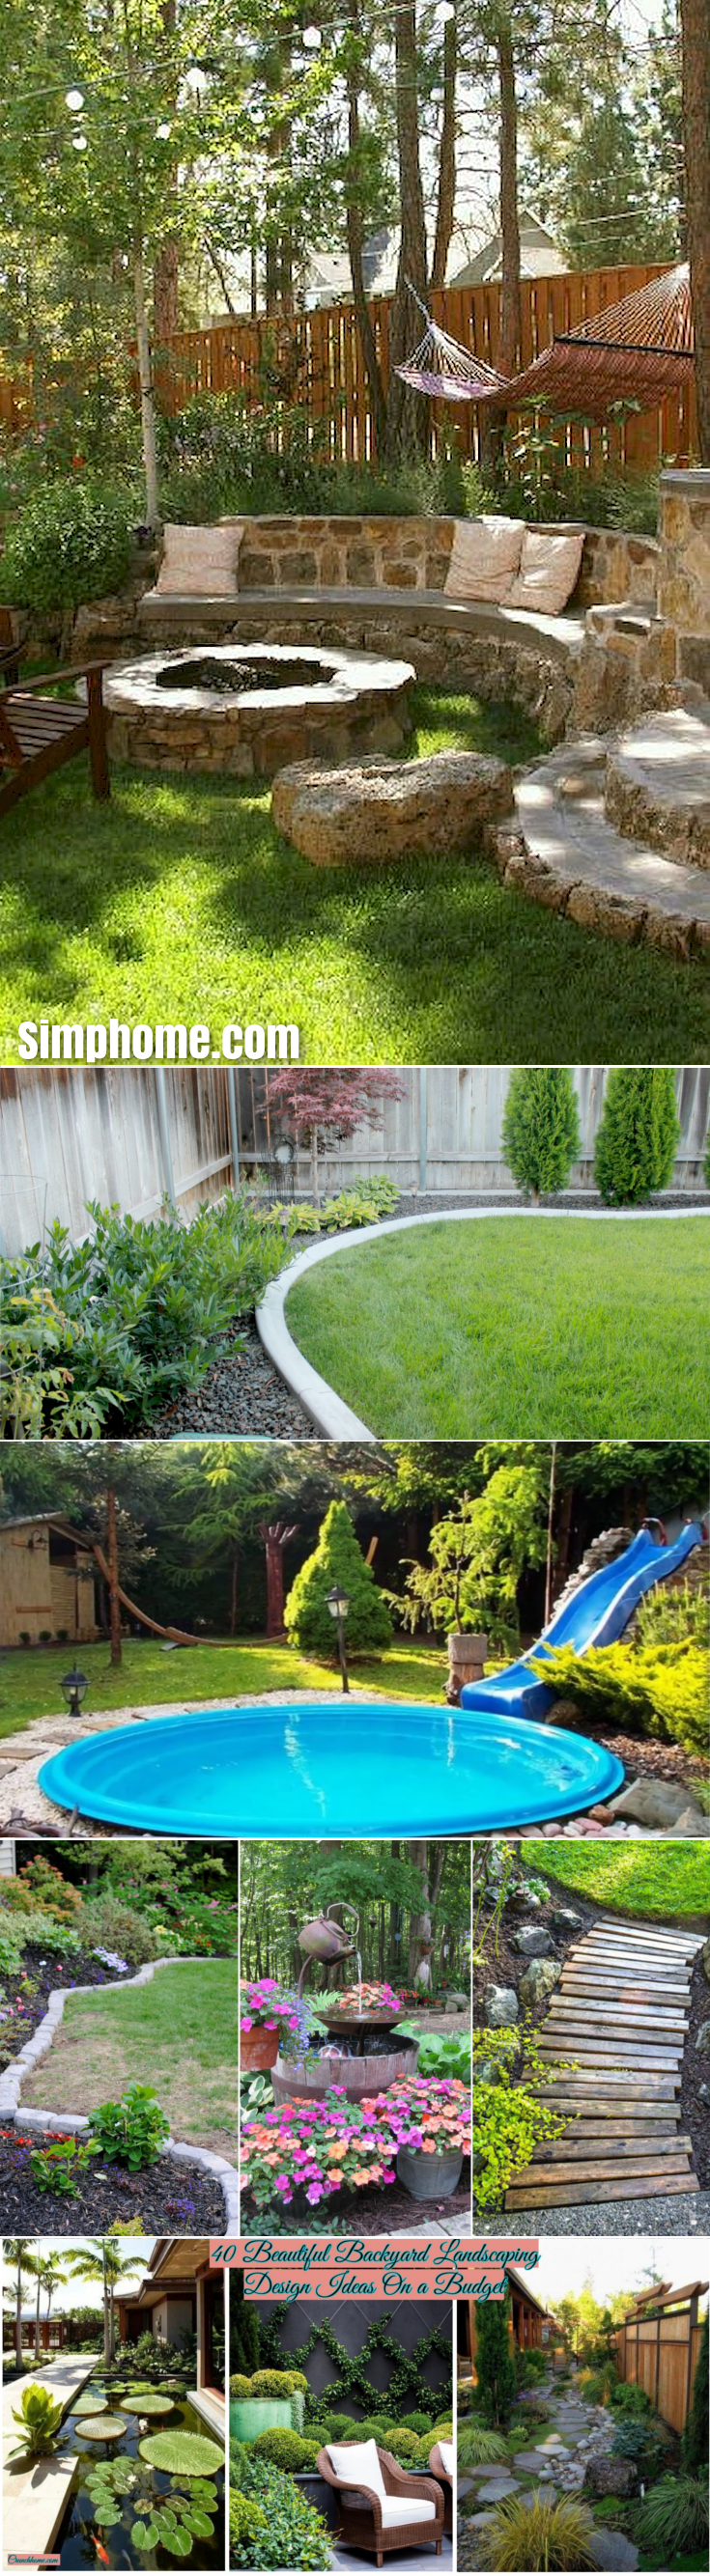 SIMPHOME.COM .11 Genius Tricks of How to Build Small Backyard Landscape Ideas On A Budget.1